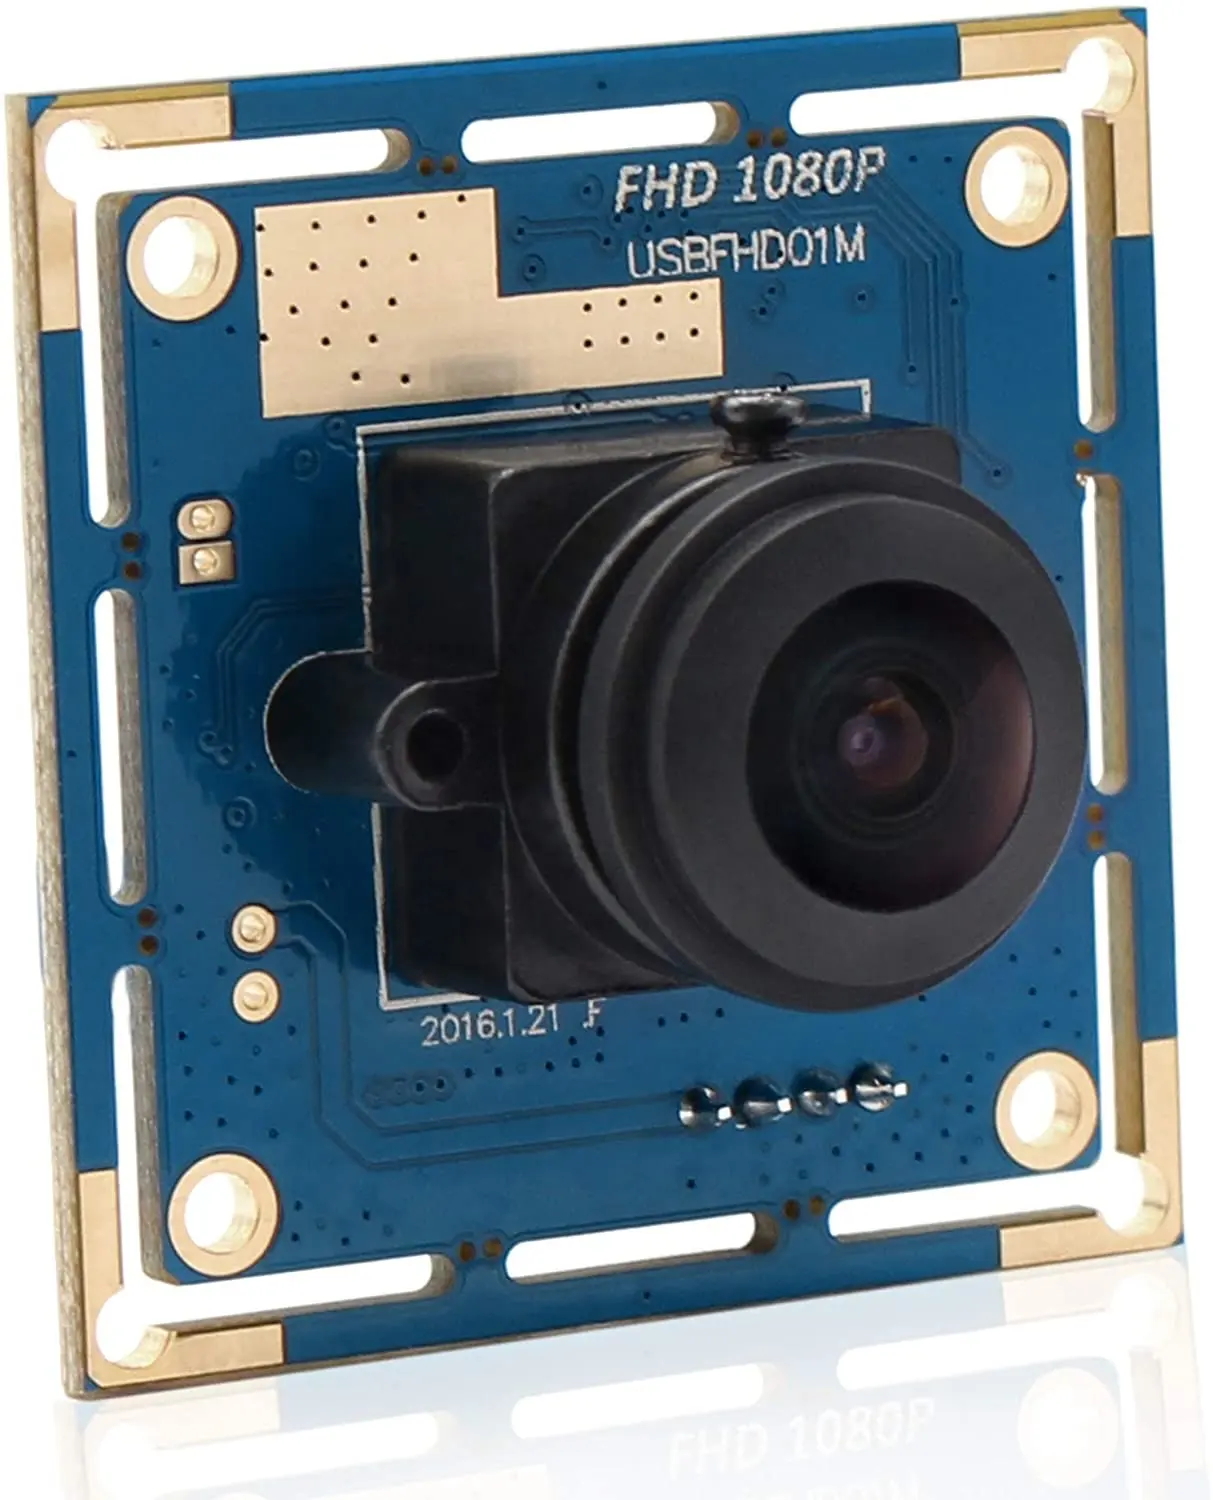 ELP 2 megapiksel full HD 1080p cmos ov2710 UVC USB geniş açı kamera modülü ile balıkgözü 180 derece lens